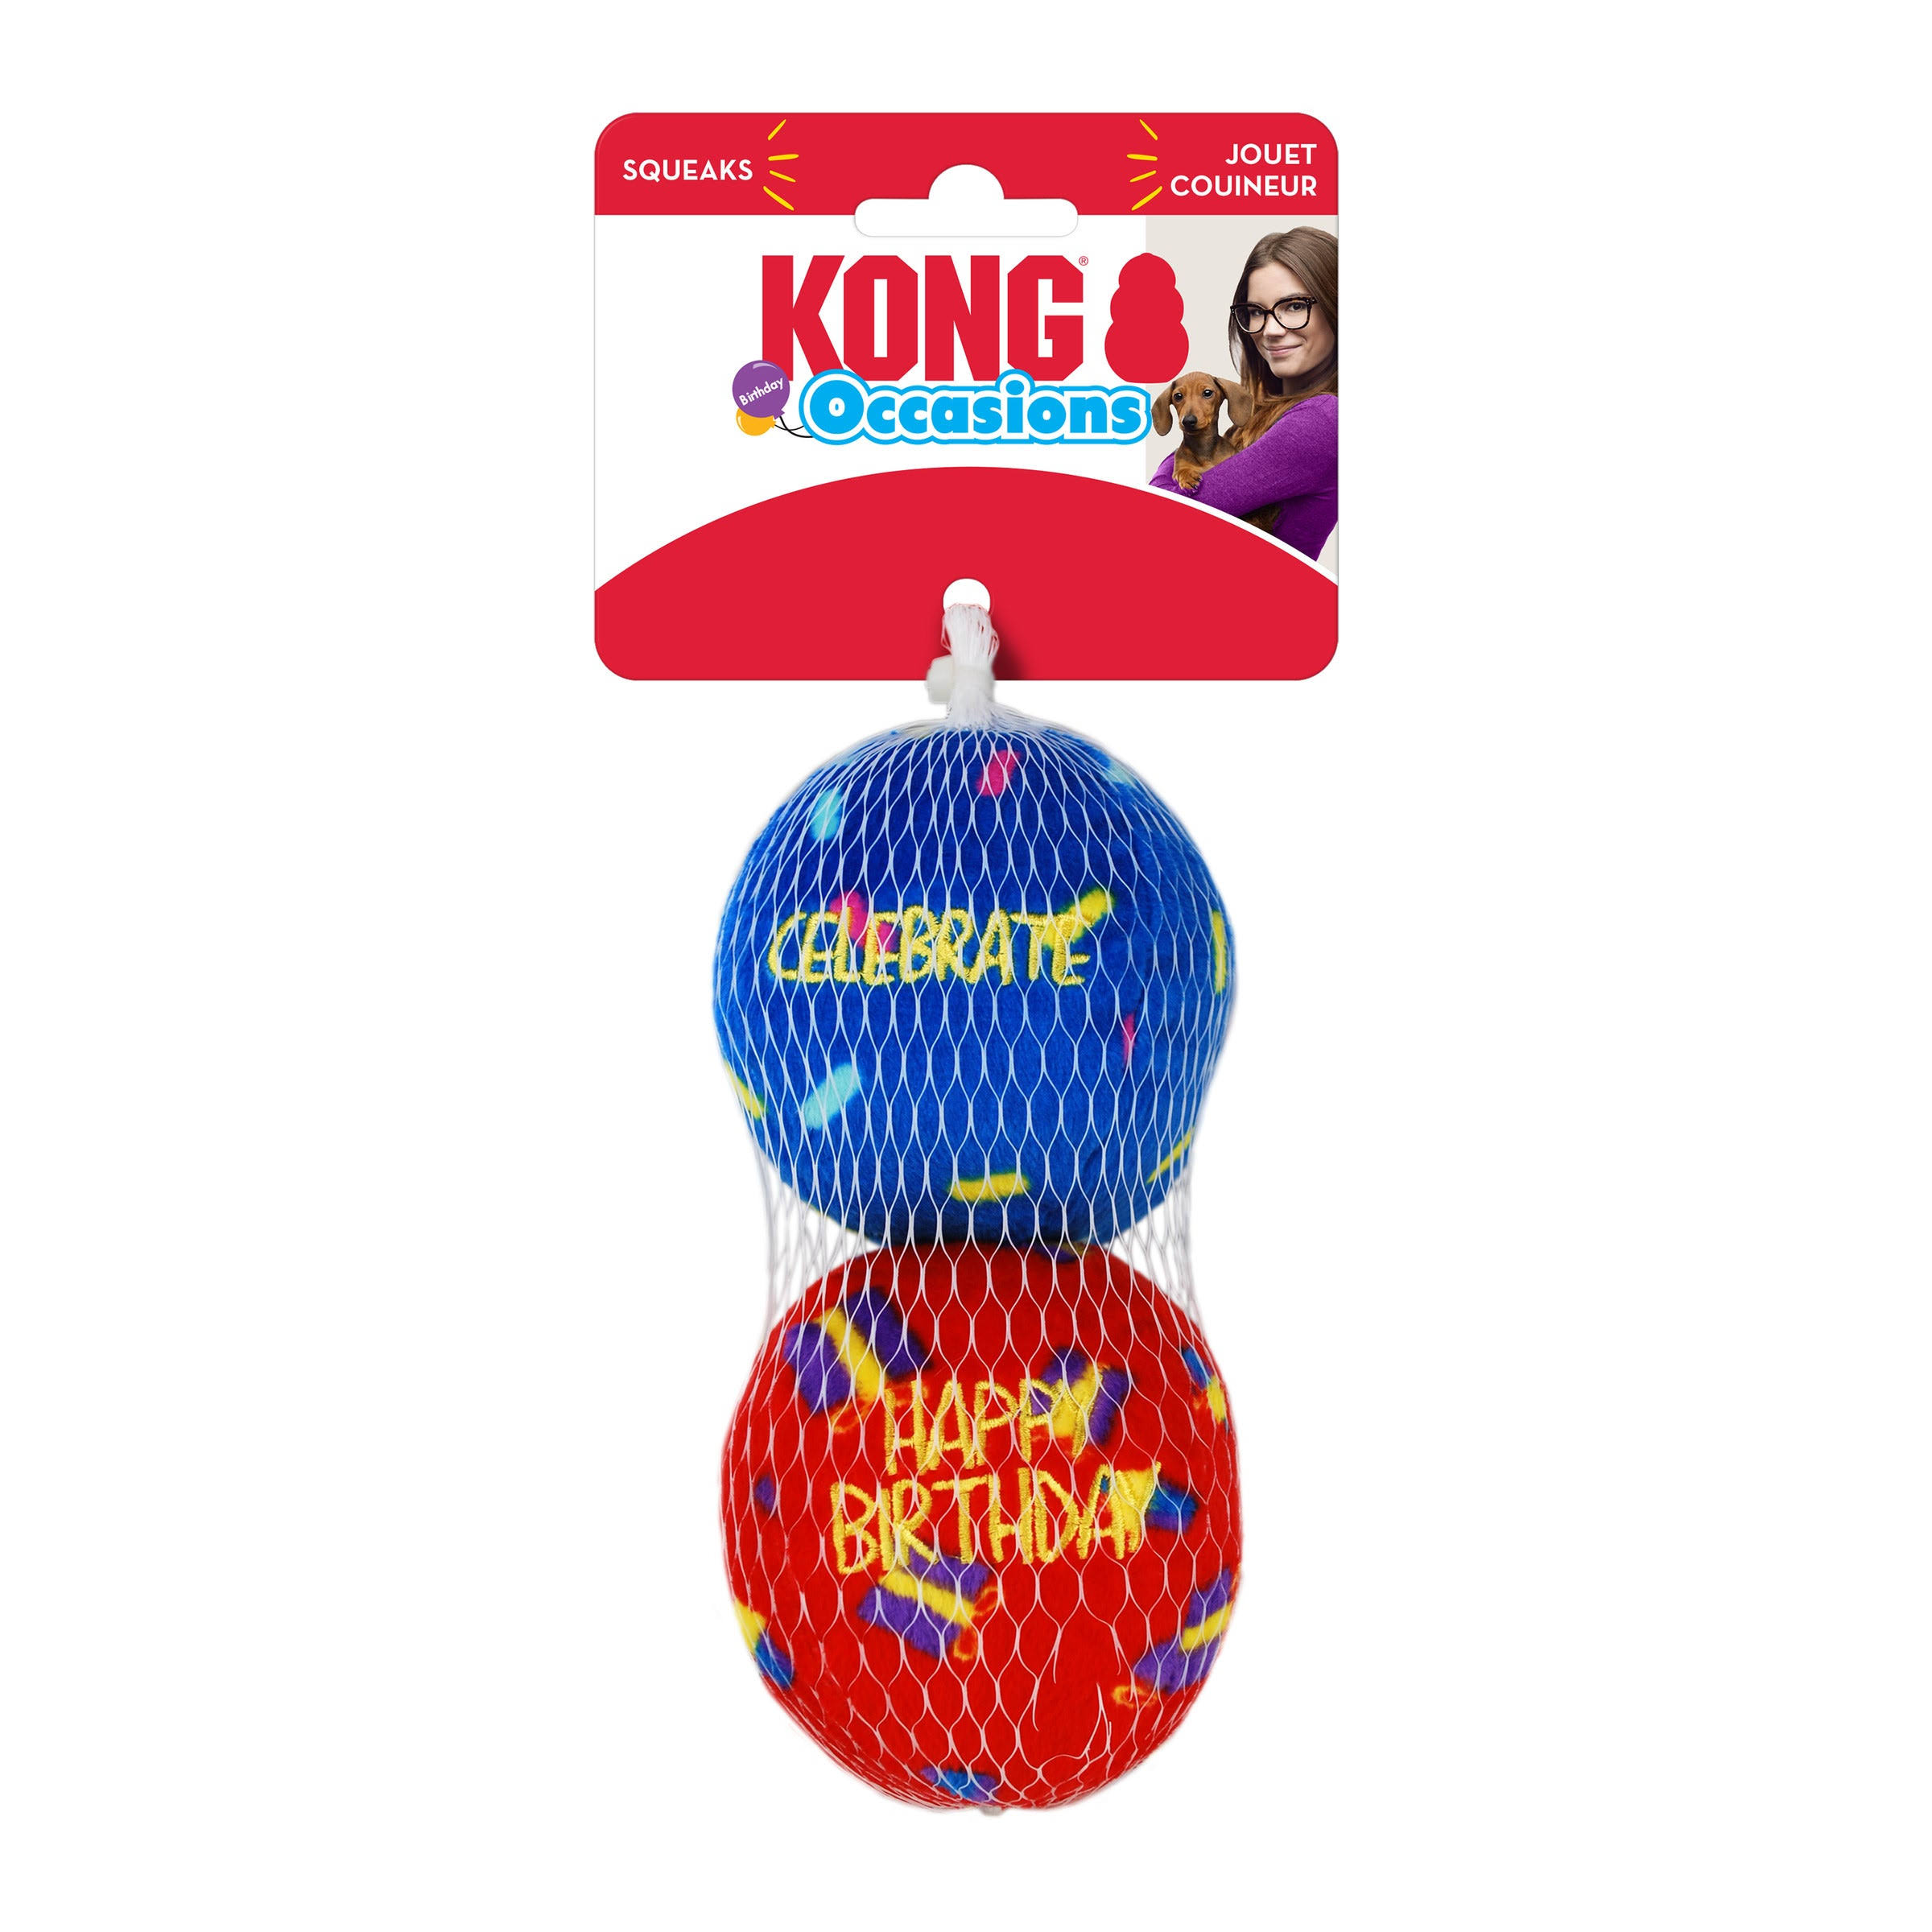 Kong Occasions Birthday Balls Dog Toy - Medium